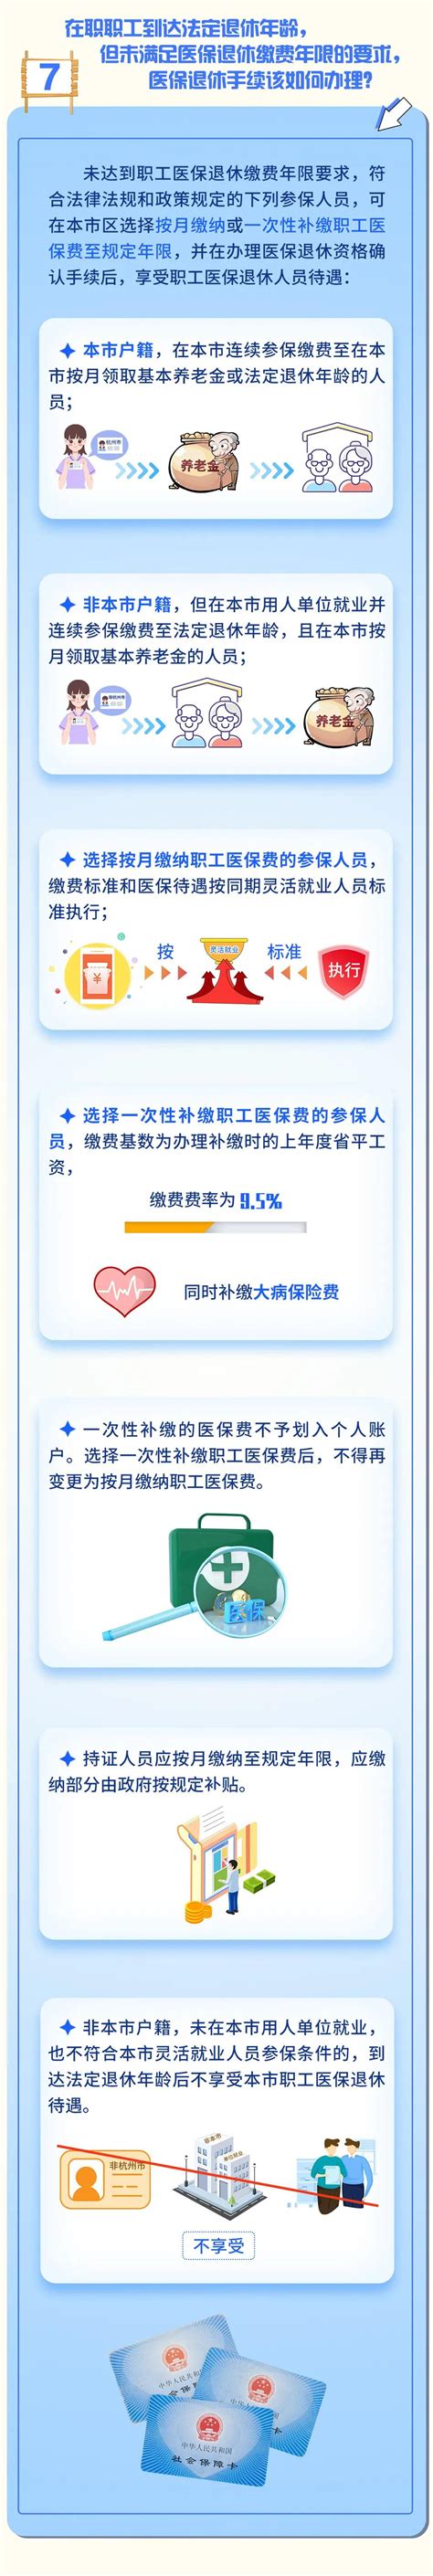 2017年杭州市区全社会在岗职工年平均工资67047元- 杭州本地宝